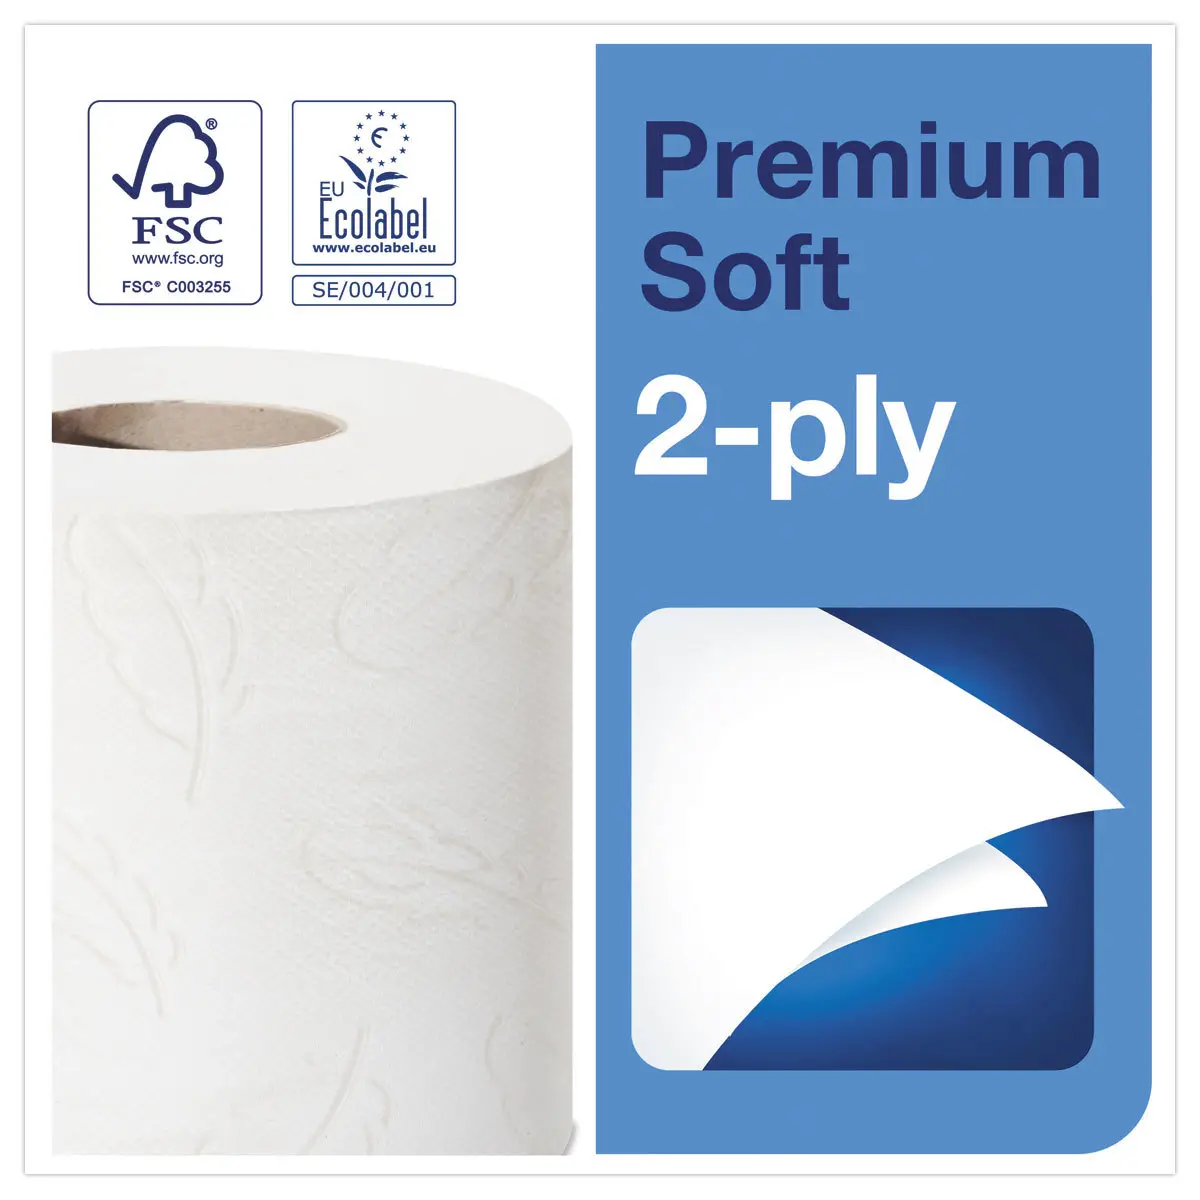 6 Rouleaux de papier toilette extra-doux Premium - TORK photo du produit